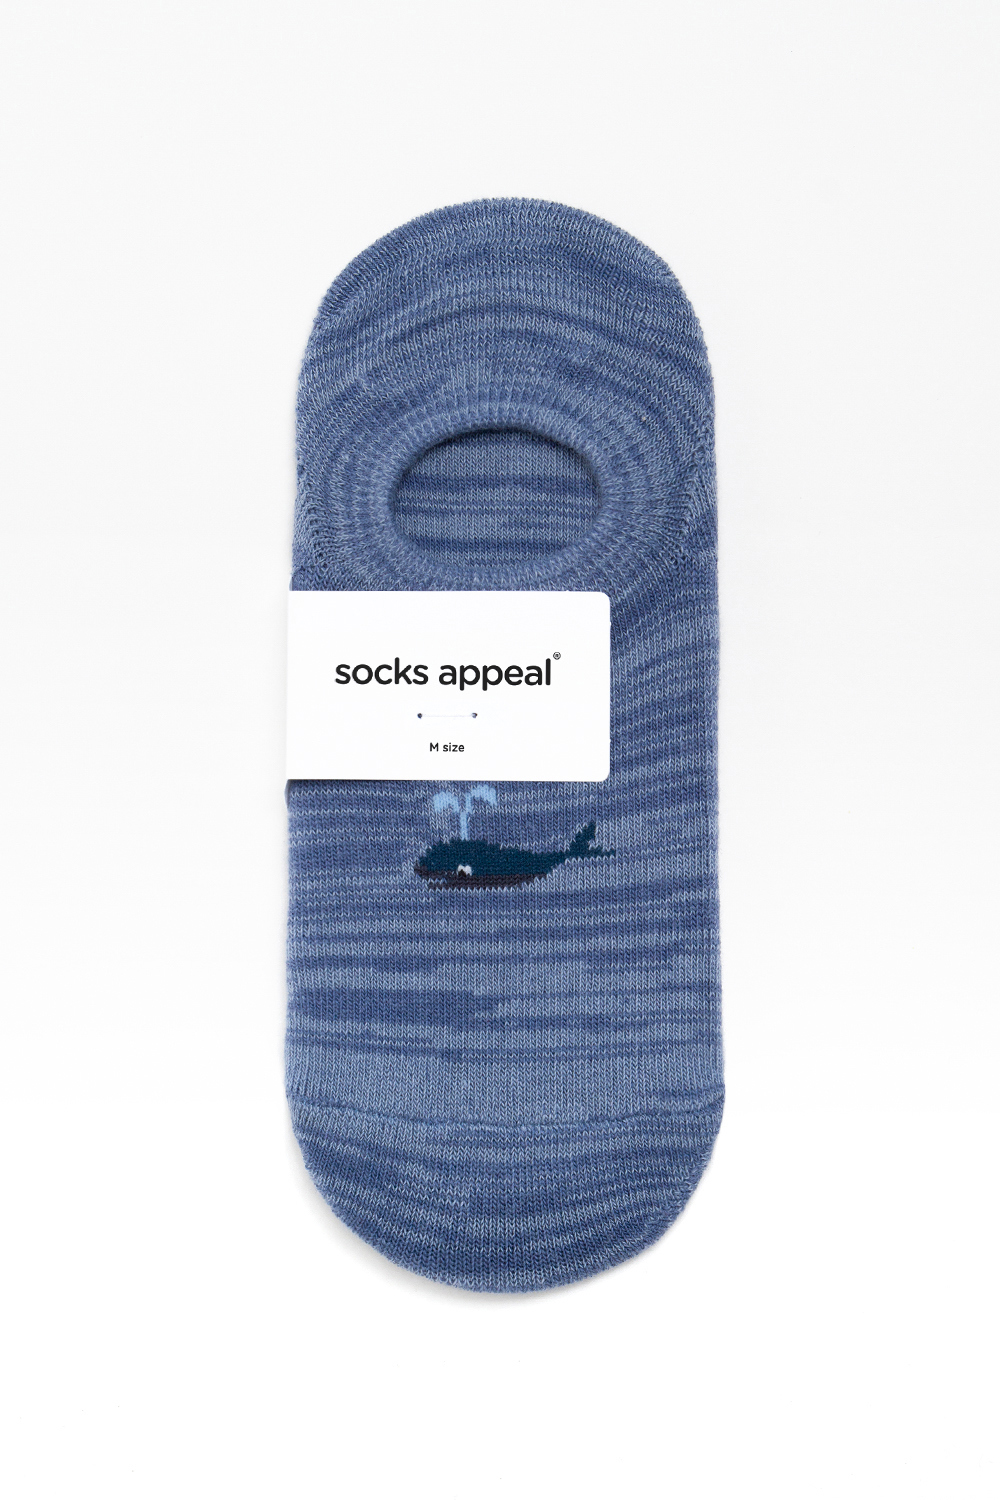 socks navy blue color image-S4L1